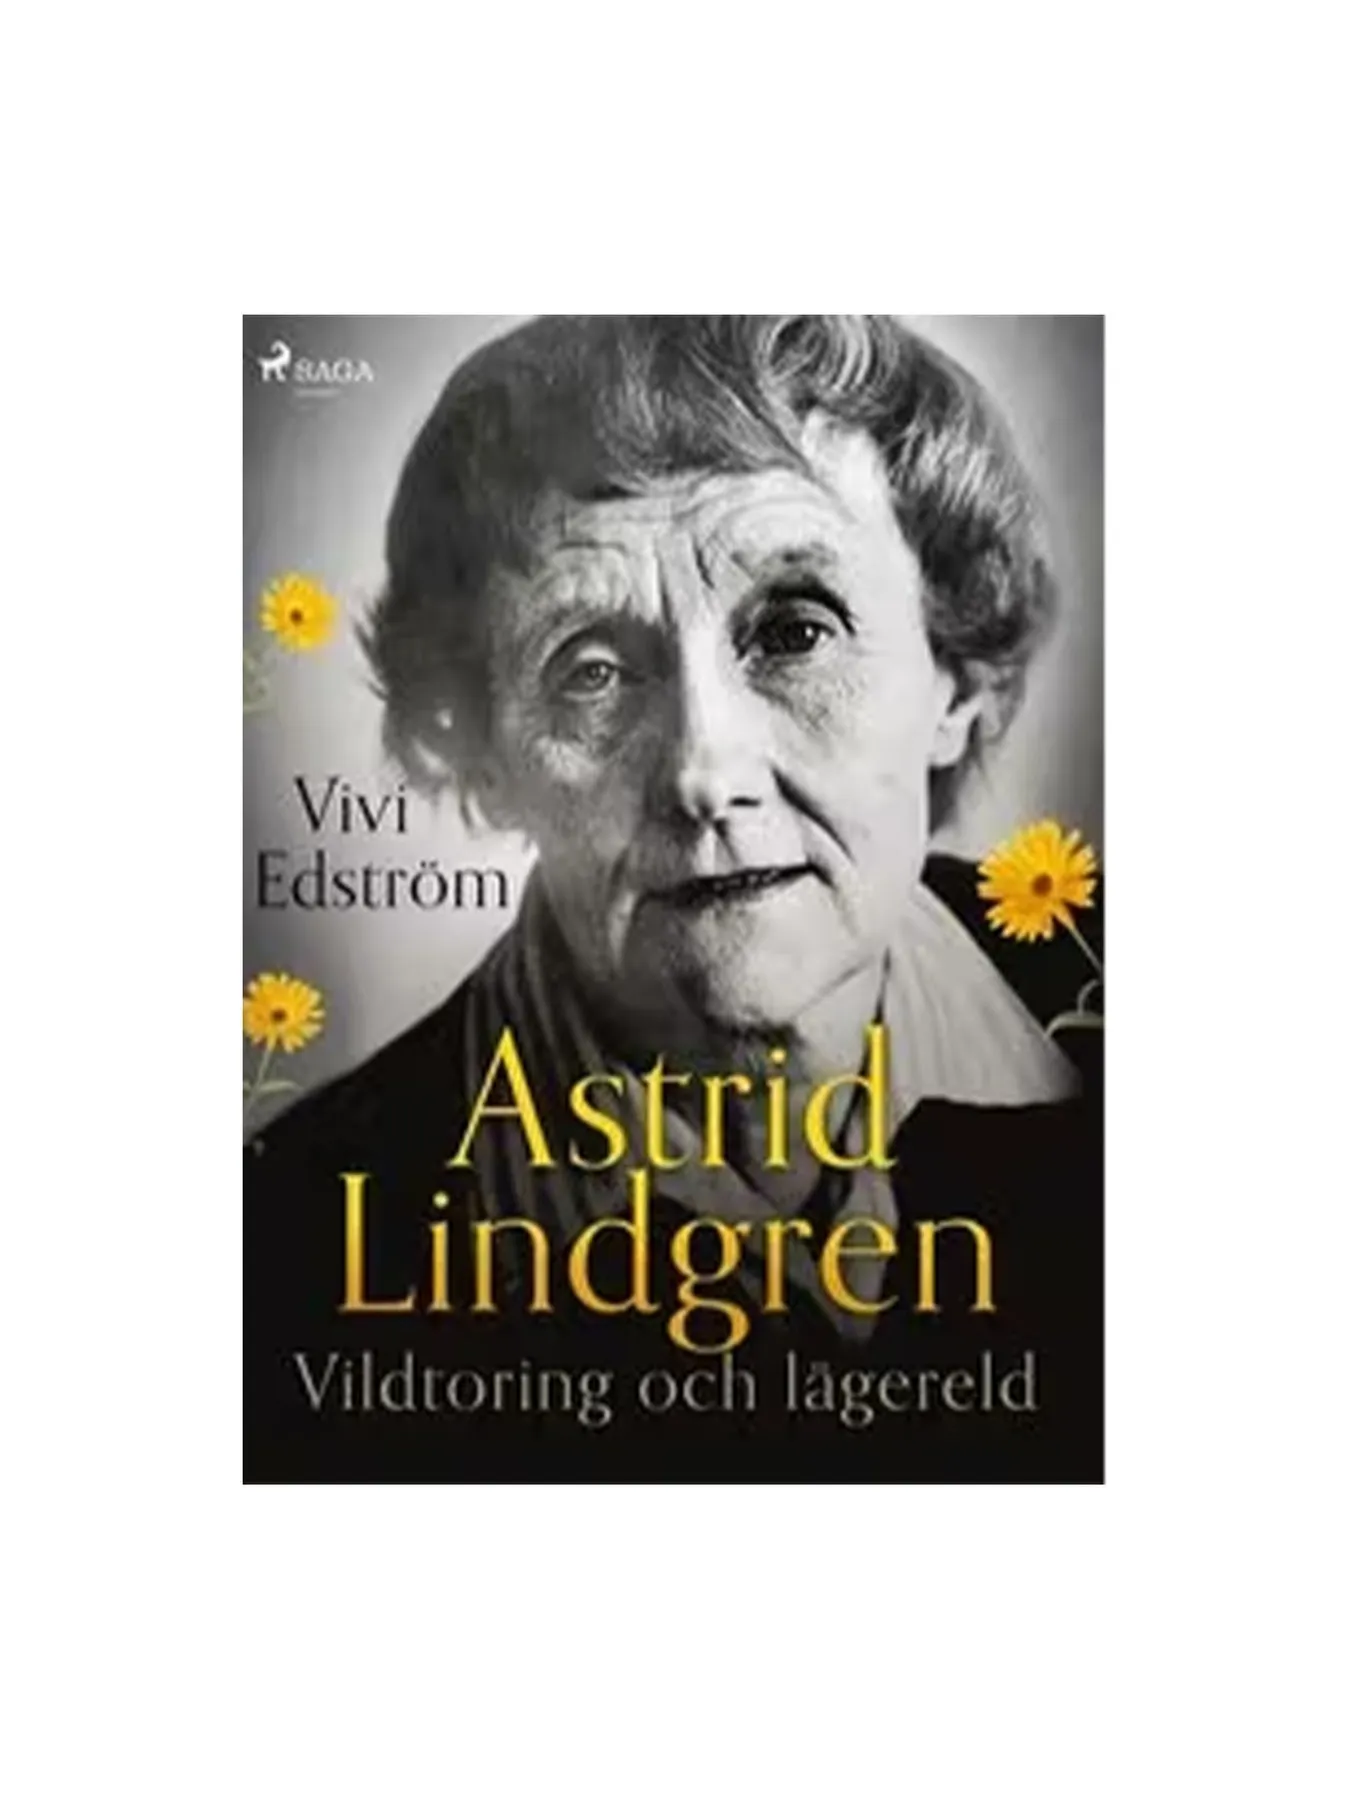 Astrid Lindgren: vildtoring och lägereld (Swedish)